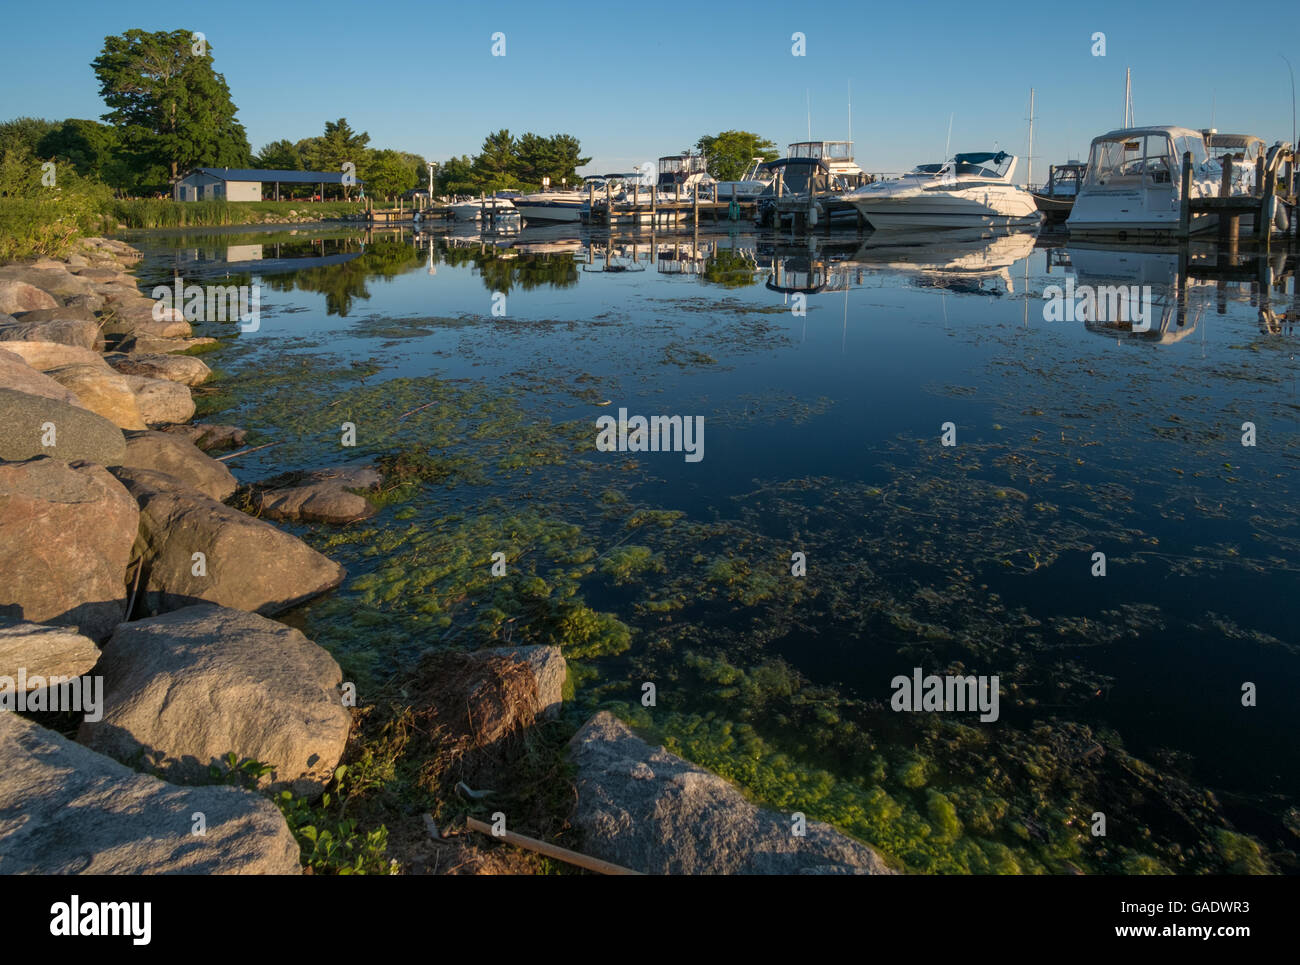 Barche ormeggiate nel lago bianco pubblico marina, Whitehall, Michigan, Stati Uniti d'America Foto Stock